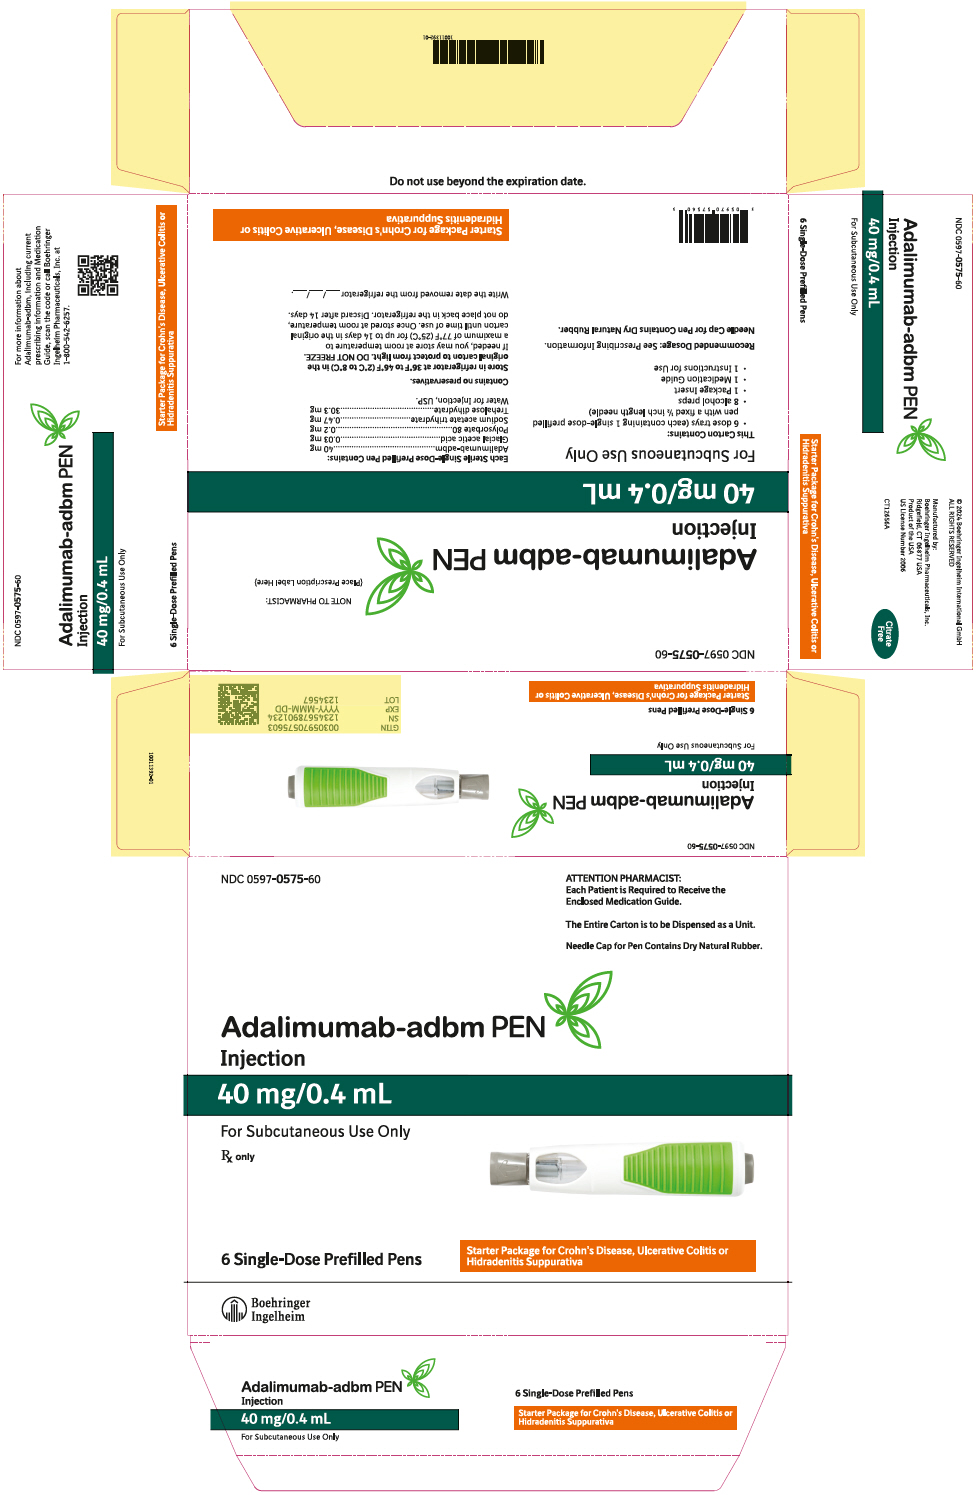 PRINCIPAL DISPLAY PANEL - 40 mg/0.4 mL Kit Carton - NDC 0597-0575-60